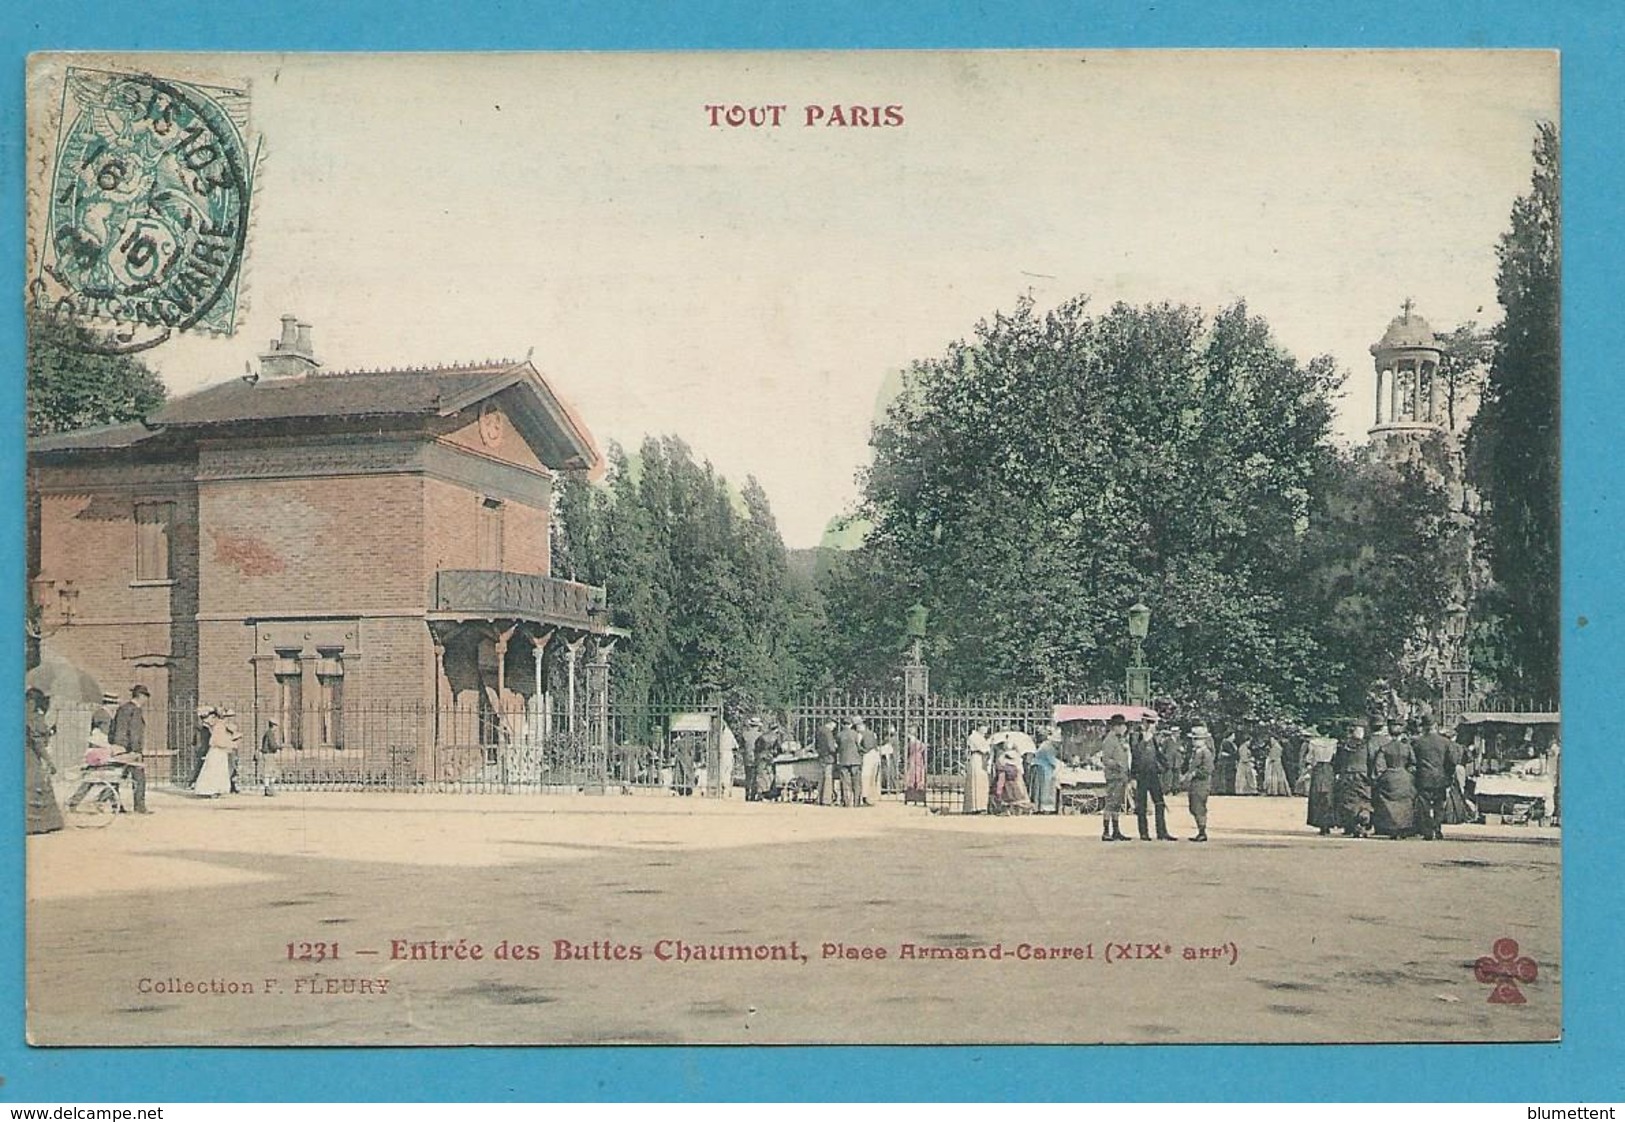 CPA 1231 TOUT PARIS - Entrée Des Buttes-Chaumon Place Armand-Carrel (XIXè Arrt)  Ed.FLEURY - Paris (19)